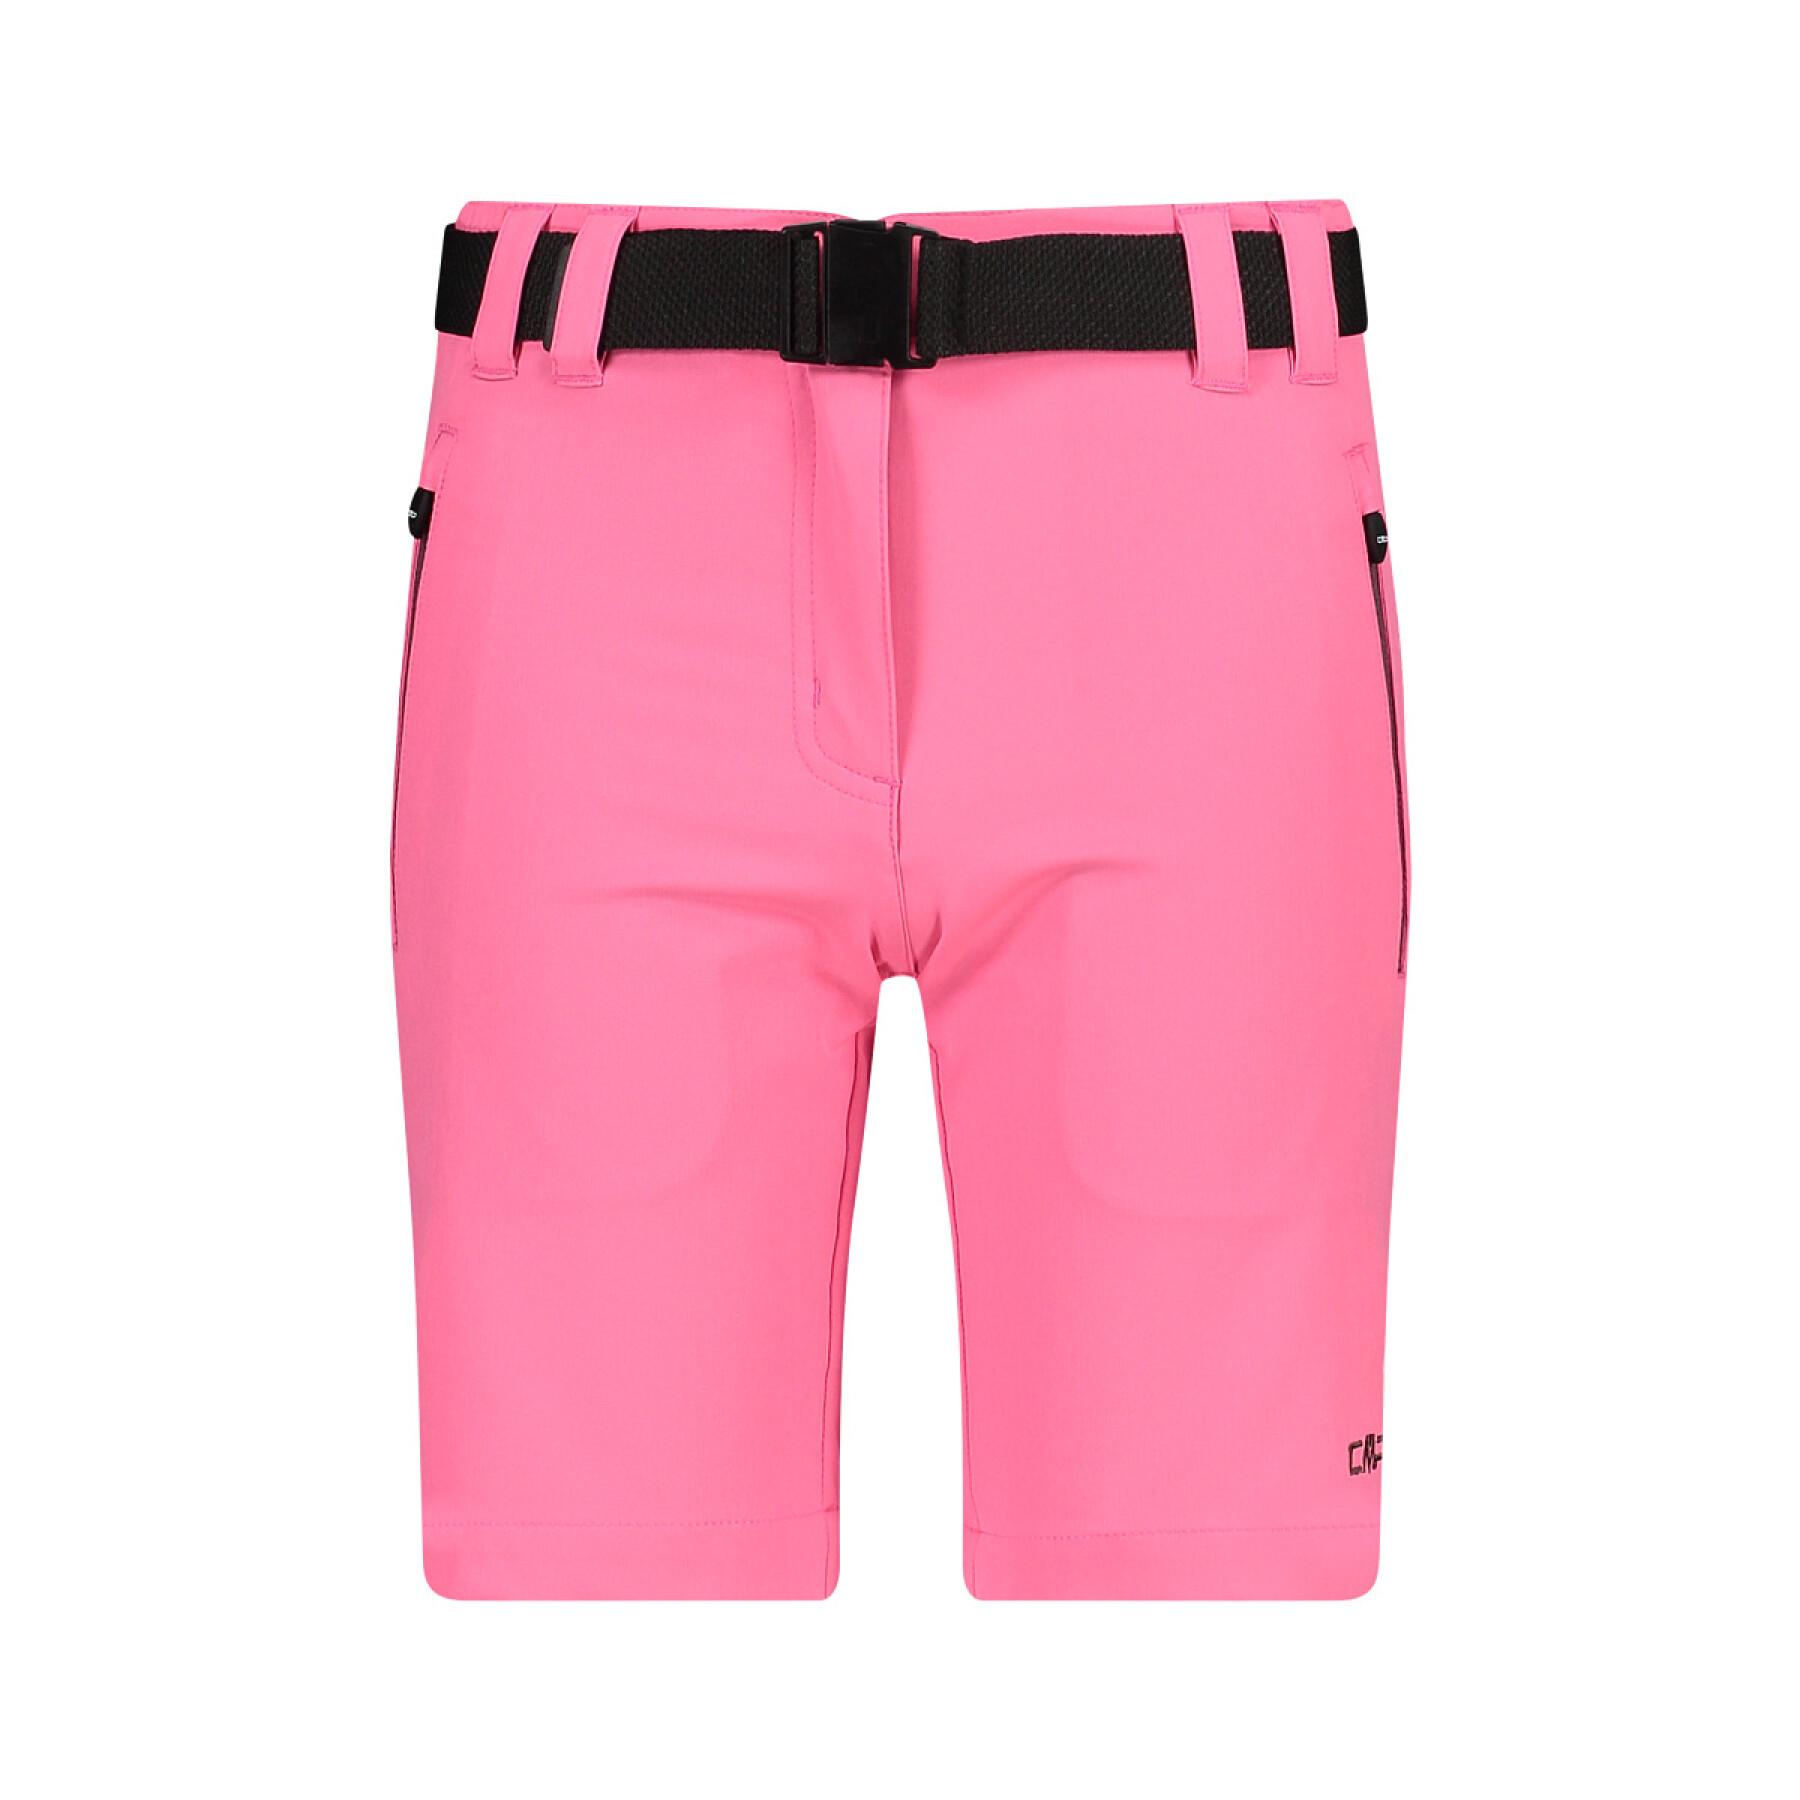 Bermuda-Shorts, Mädchen CMP